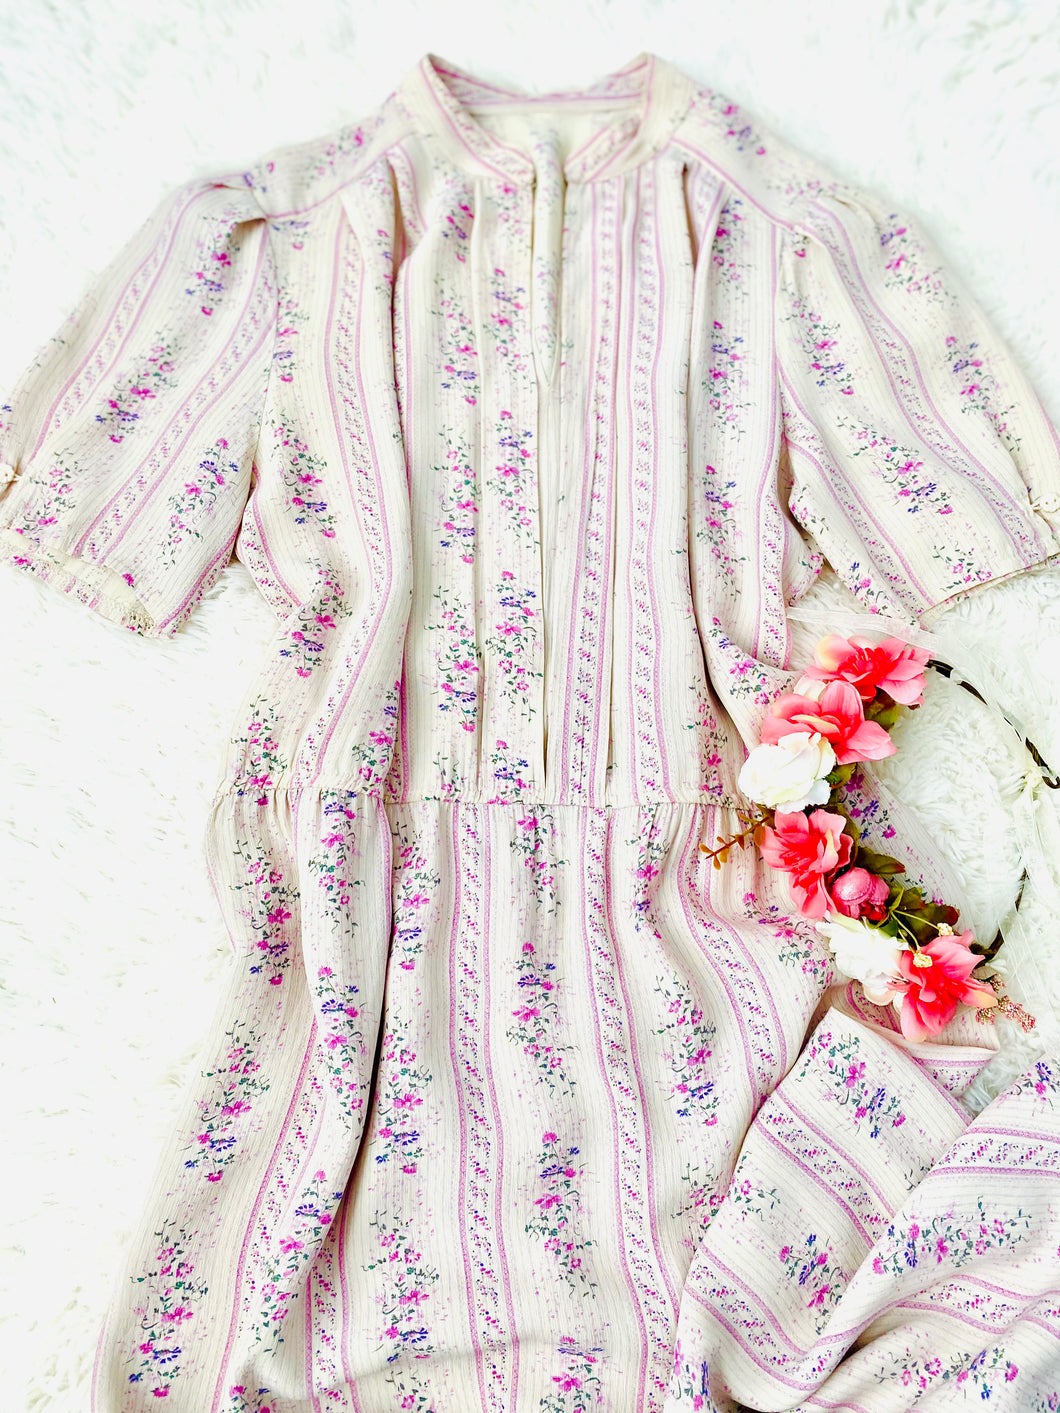 Vintage 1970s pink floral dress